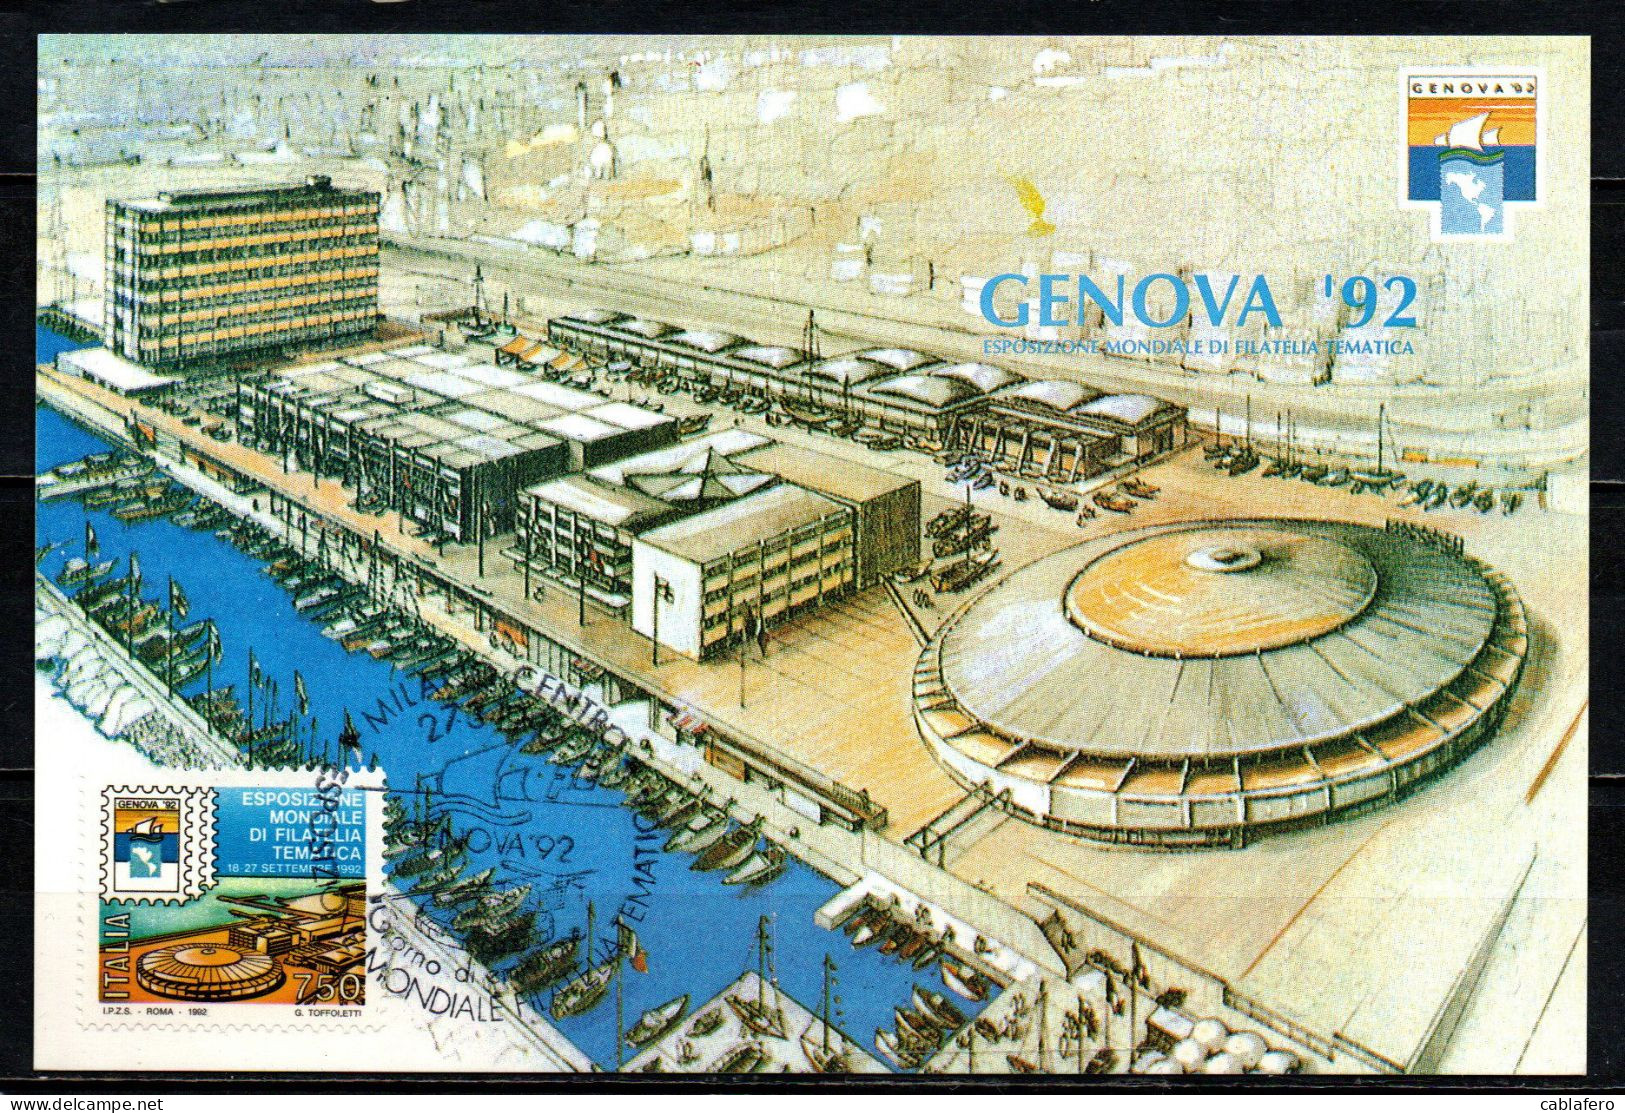 ITALIA - 1992 - ESPOSIZIONE MONDAILE DI FILATYELIA TEMATICA "GENOVA '92" - Cartes-Maximum (CM)